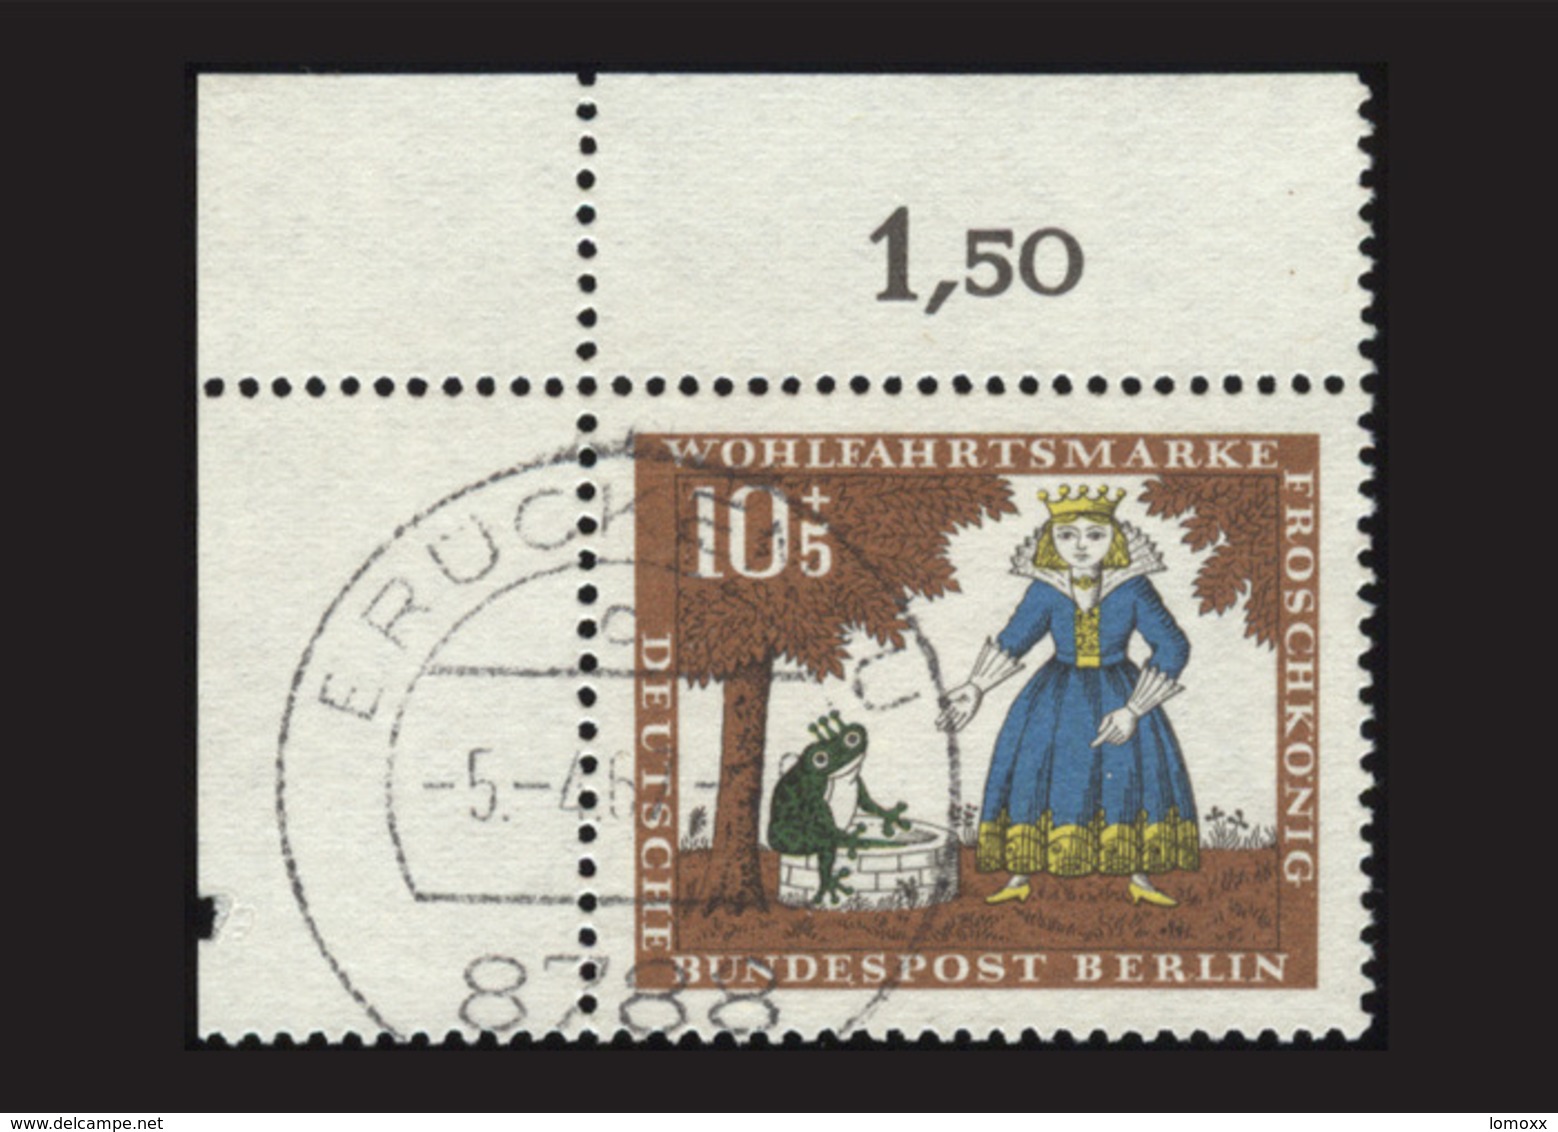 Berlin 1966, Michel-Nr. 295, Wohlfahrt 1966, 10 Pf., Eckrand Links Oben, Gestempelt - Gebruikt